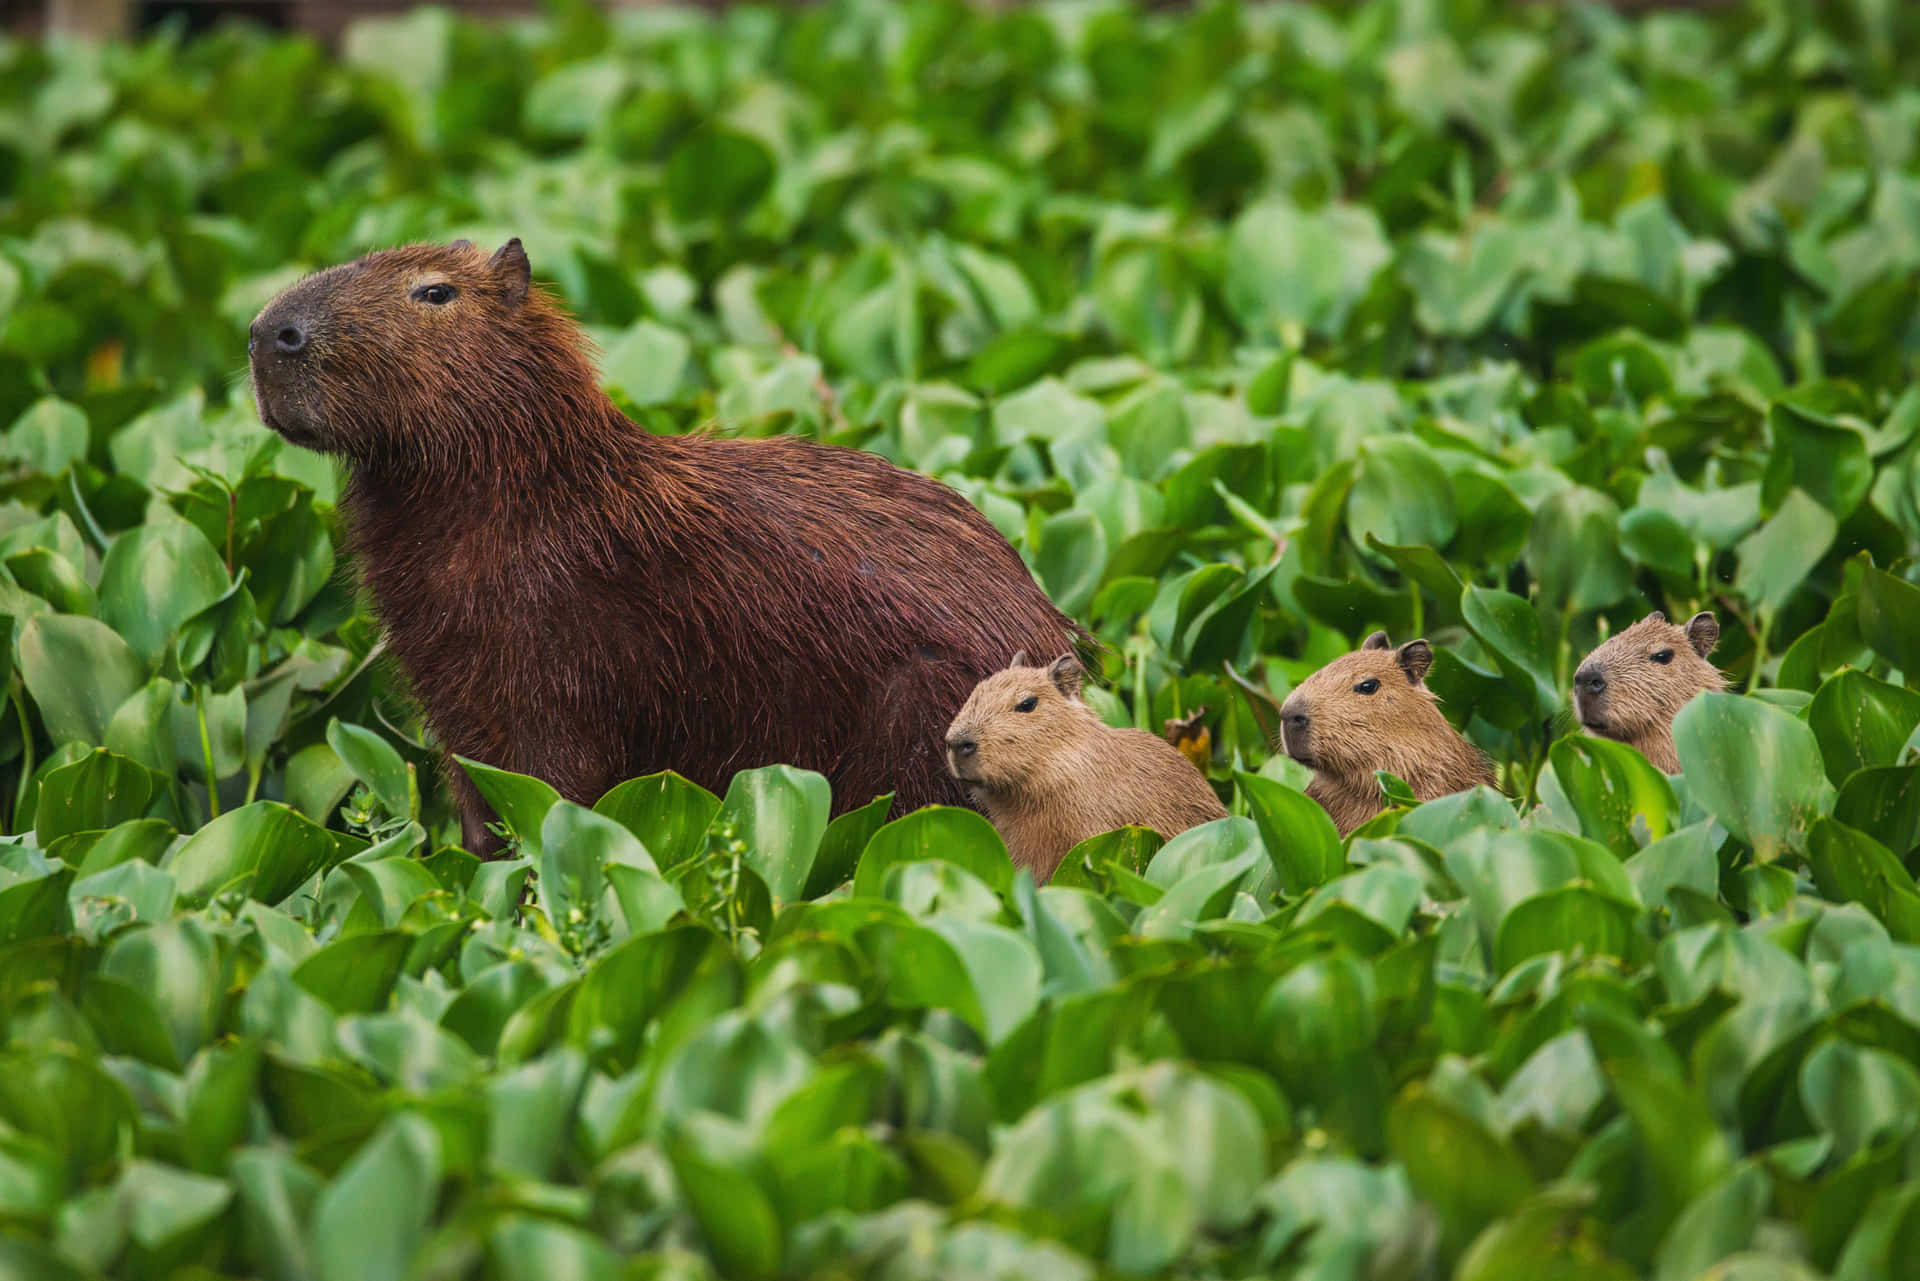 A cute Capybara sunbathing in a grassy meadow.